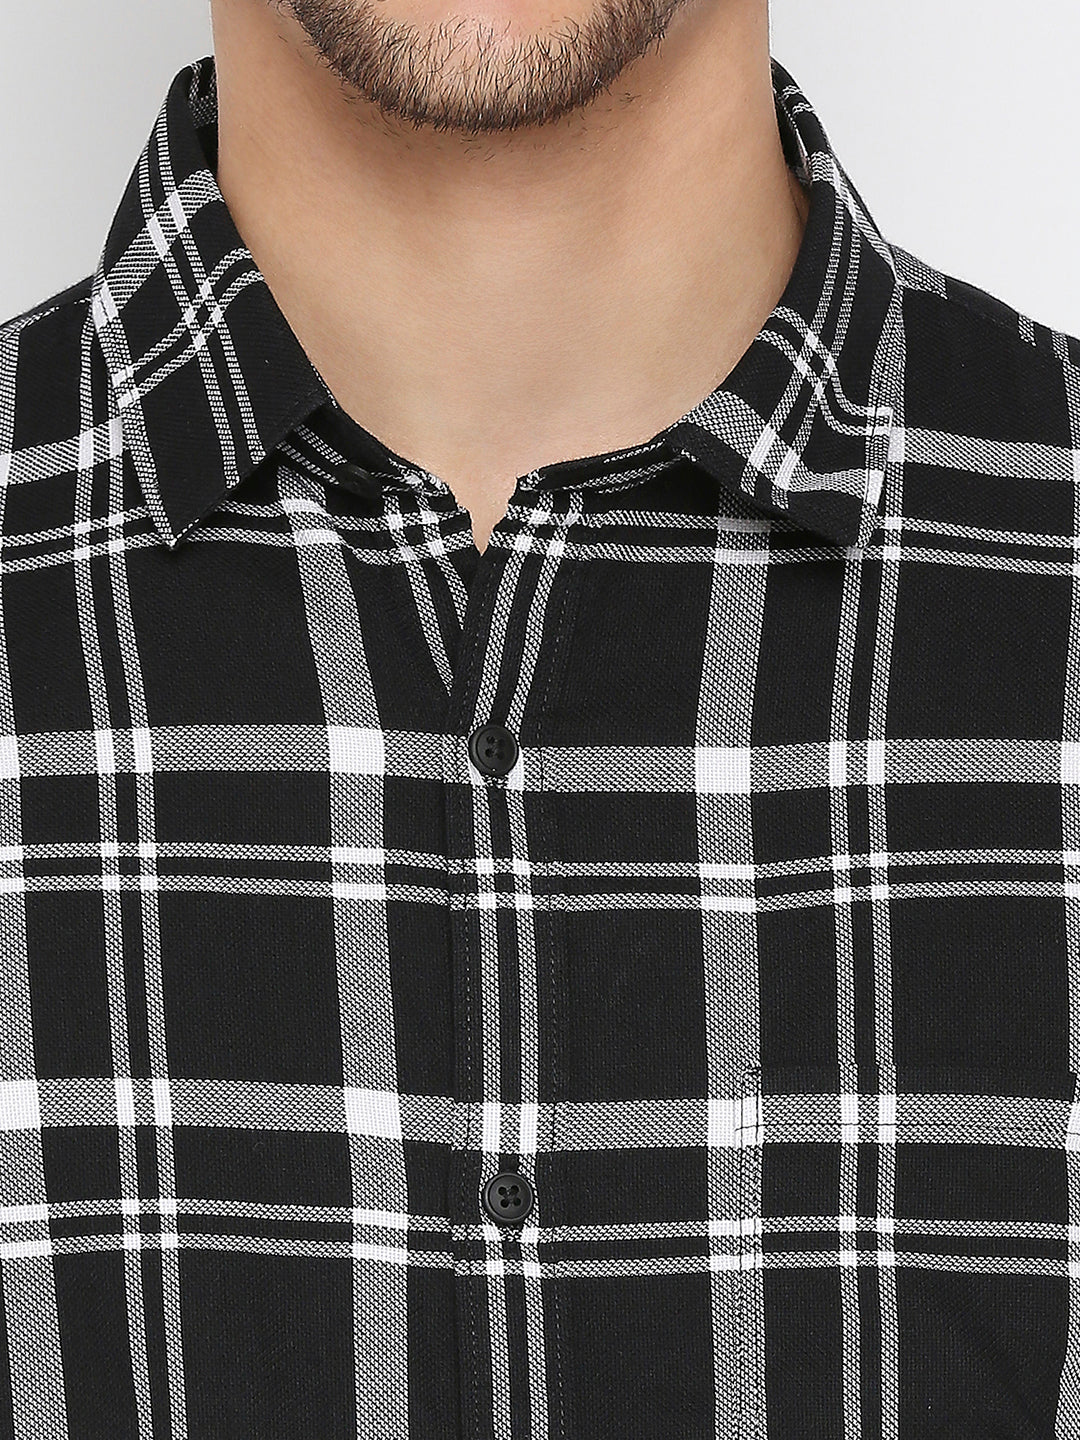 Spykar Black Cotton Full Sleeve Checkered Shirt For Men